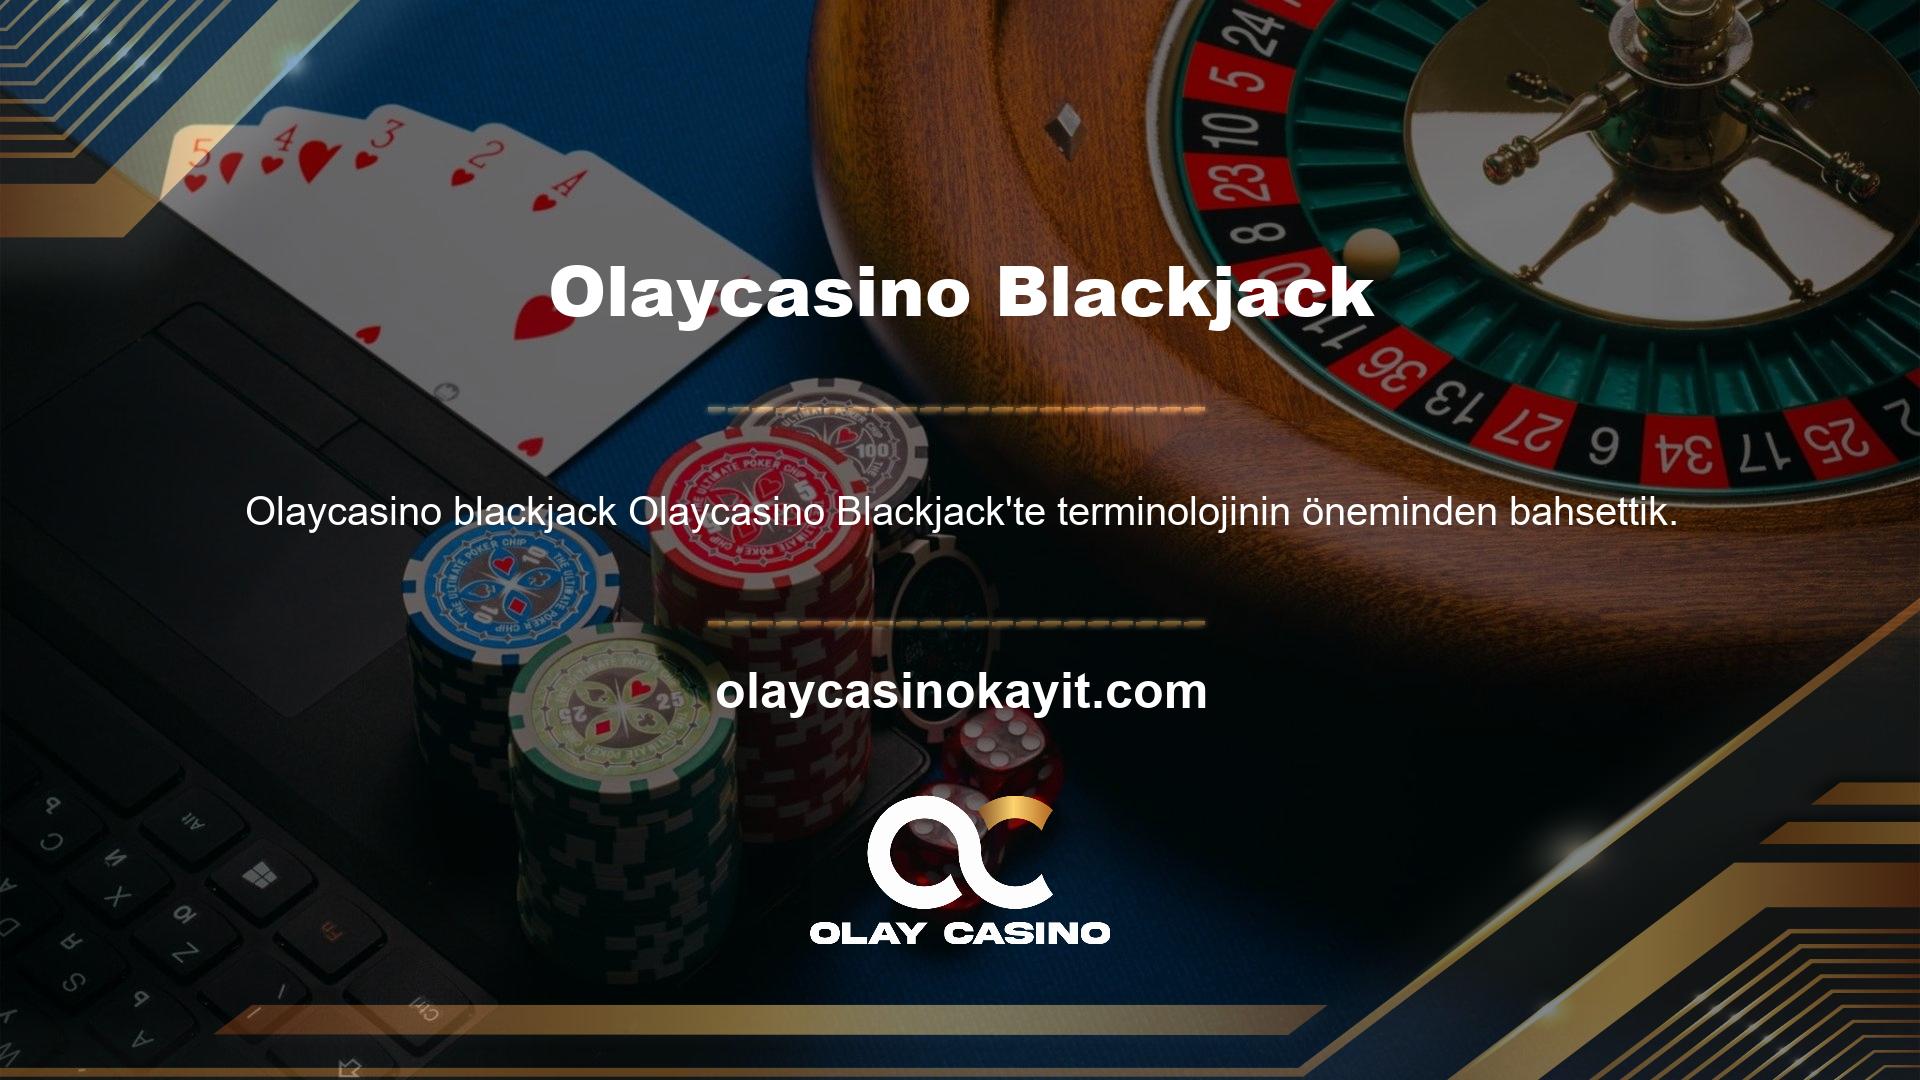 Oyuncular, Blackjack oynamak için aşağıda açıklanan hüküm ve koşulları okumalı veya kabul etmelidir